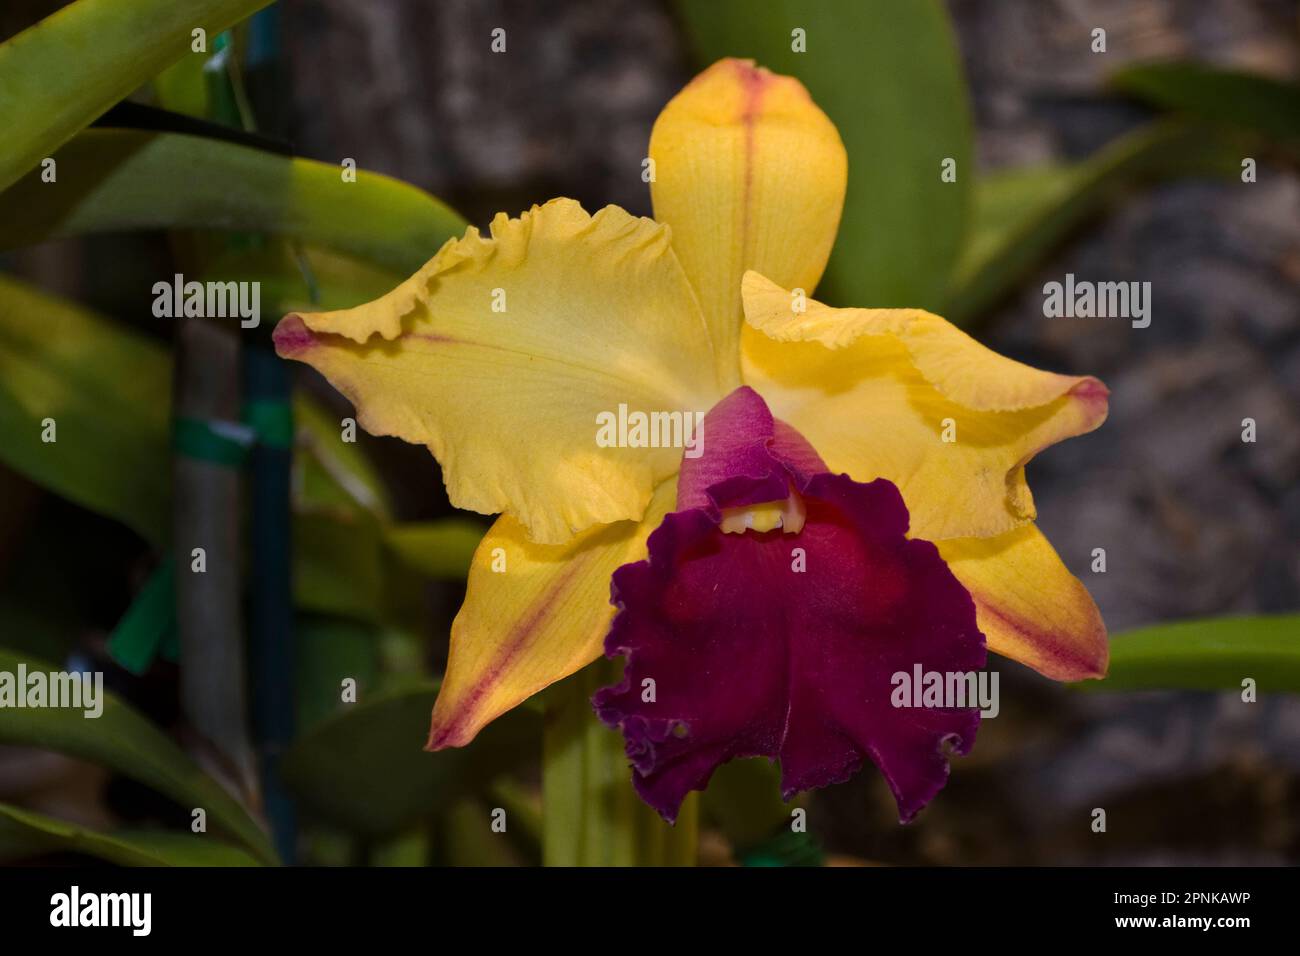 Belle fleur d'orchidée Cattleya aux pétales jaunes et bordeaux et aux feuilles vertes Banque D'Images